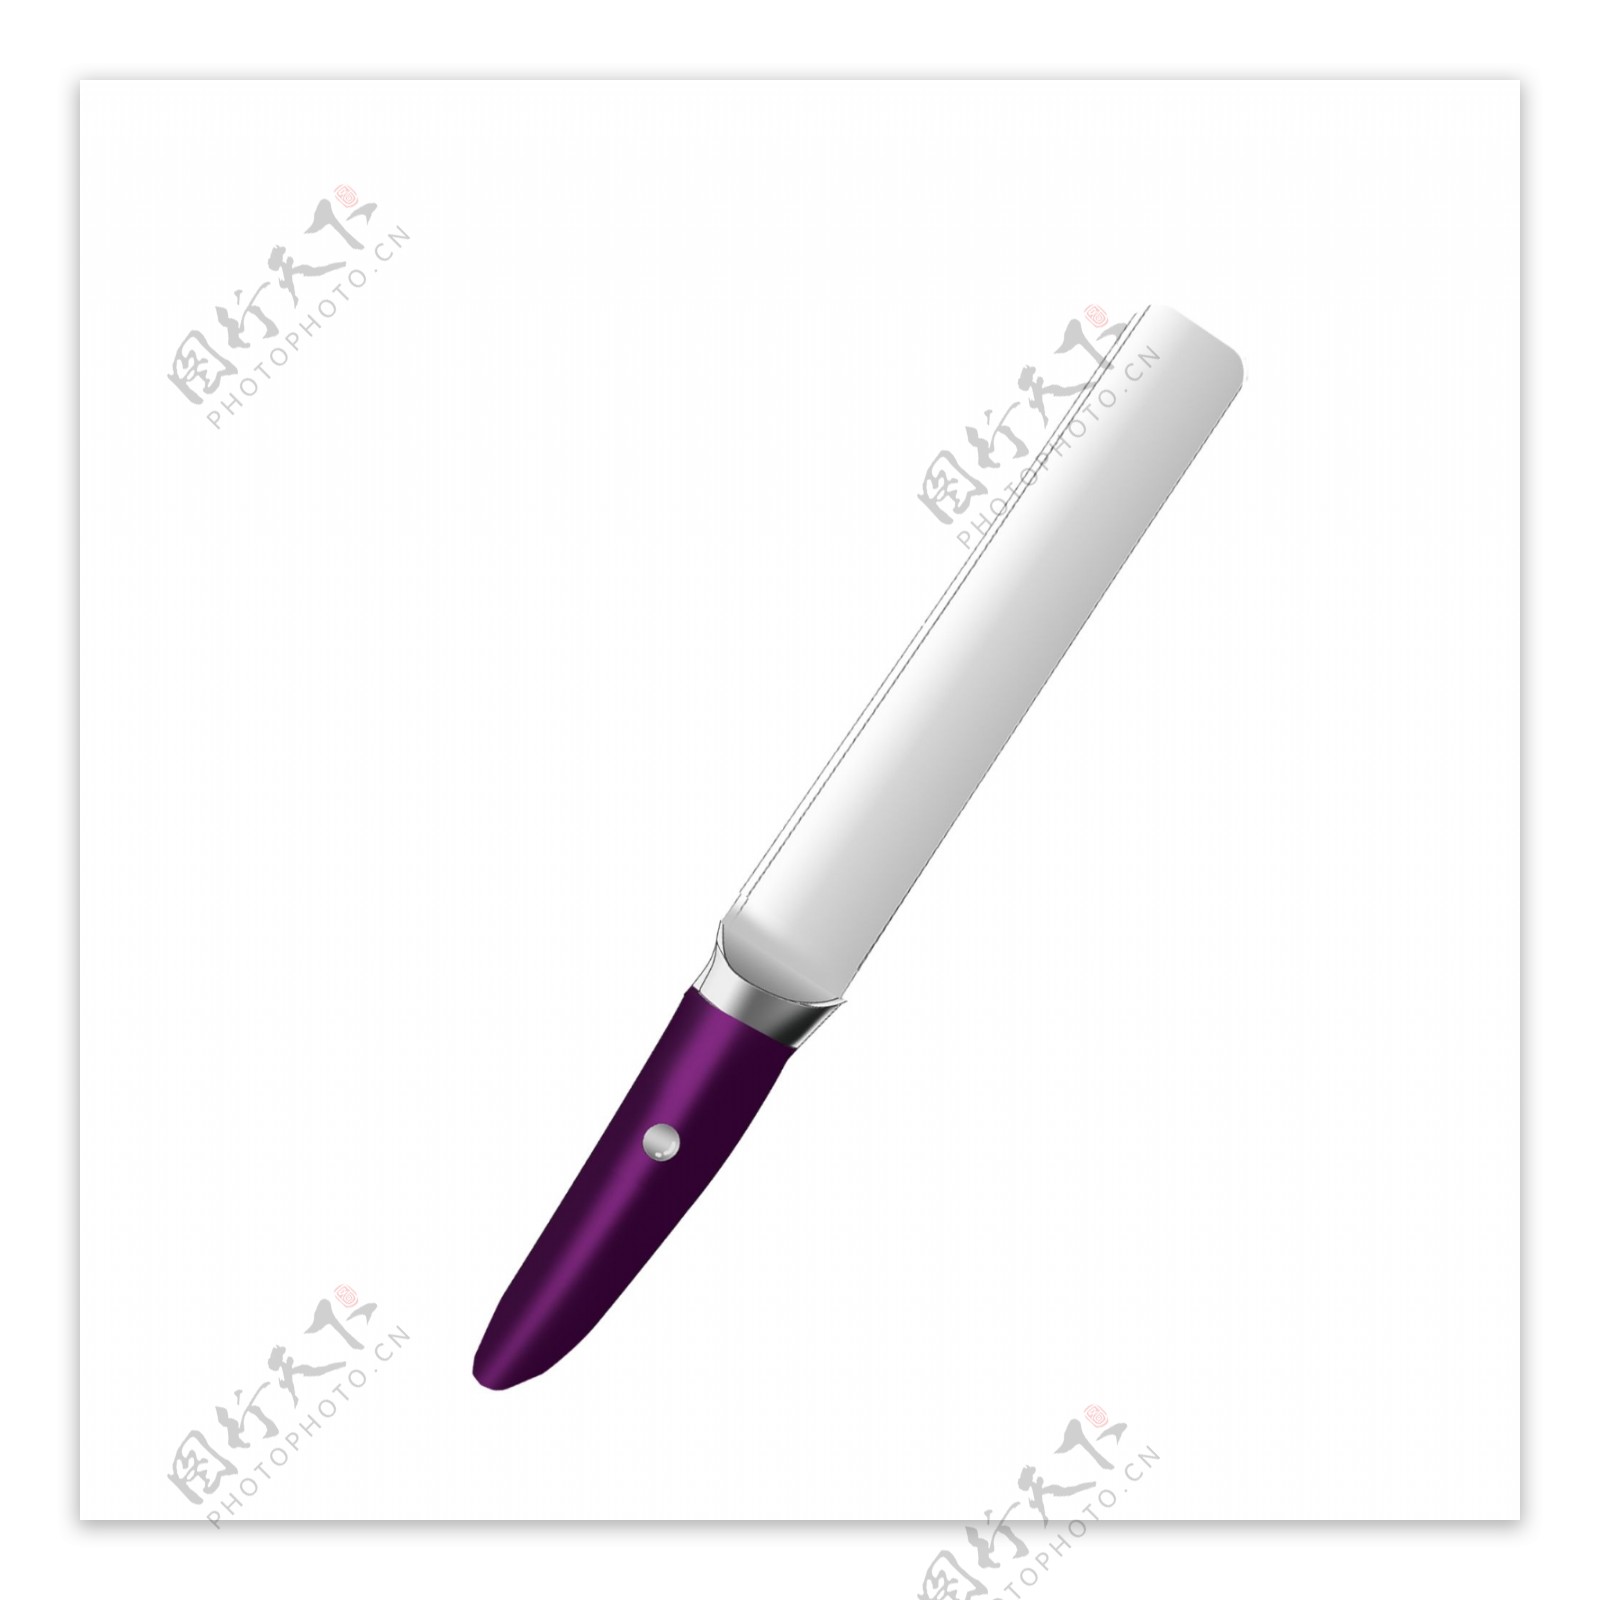 高雅紫色西瓜刀水果刀